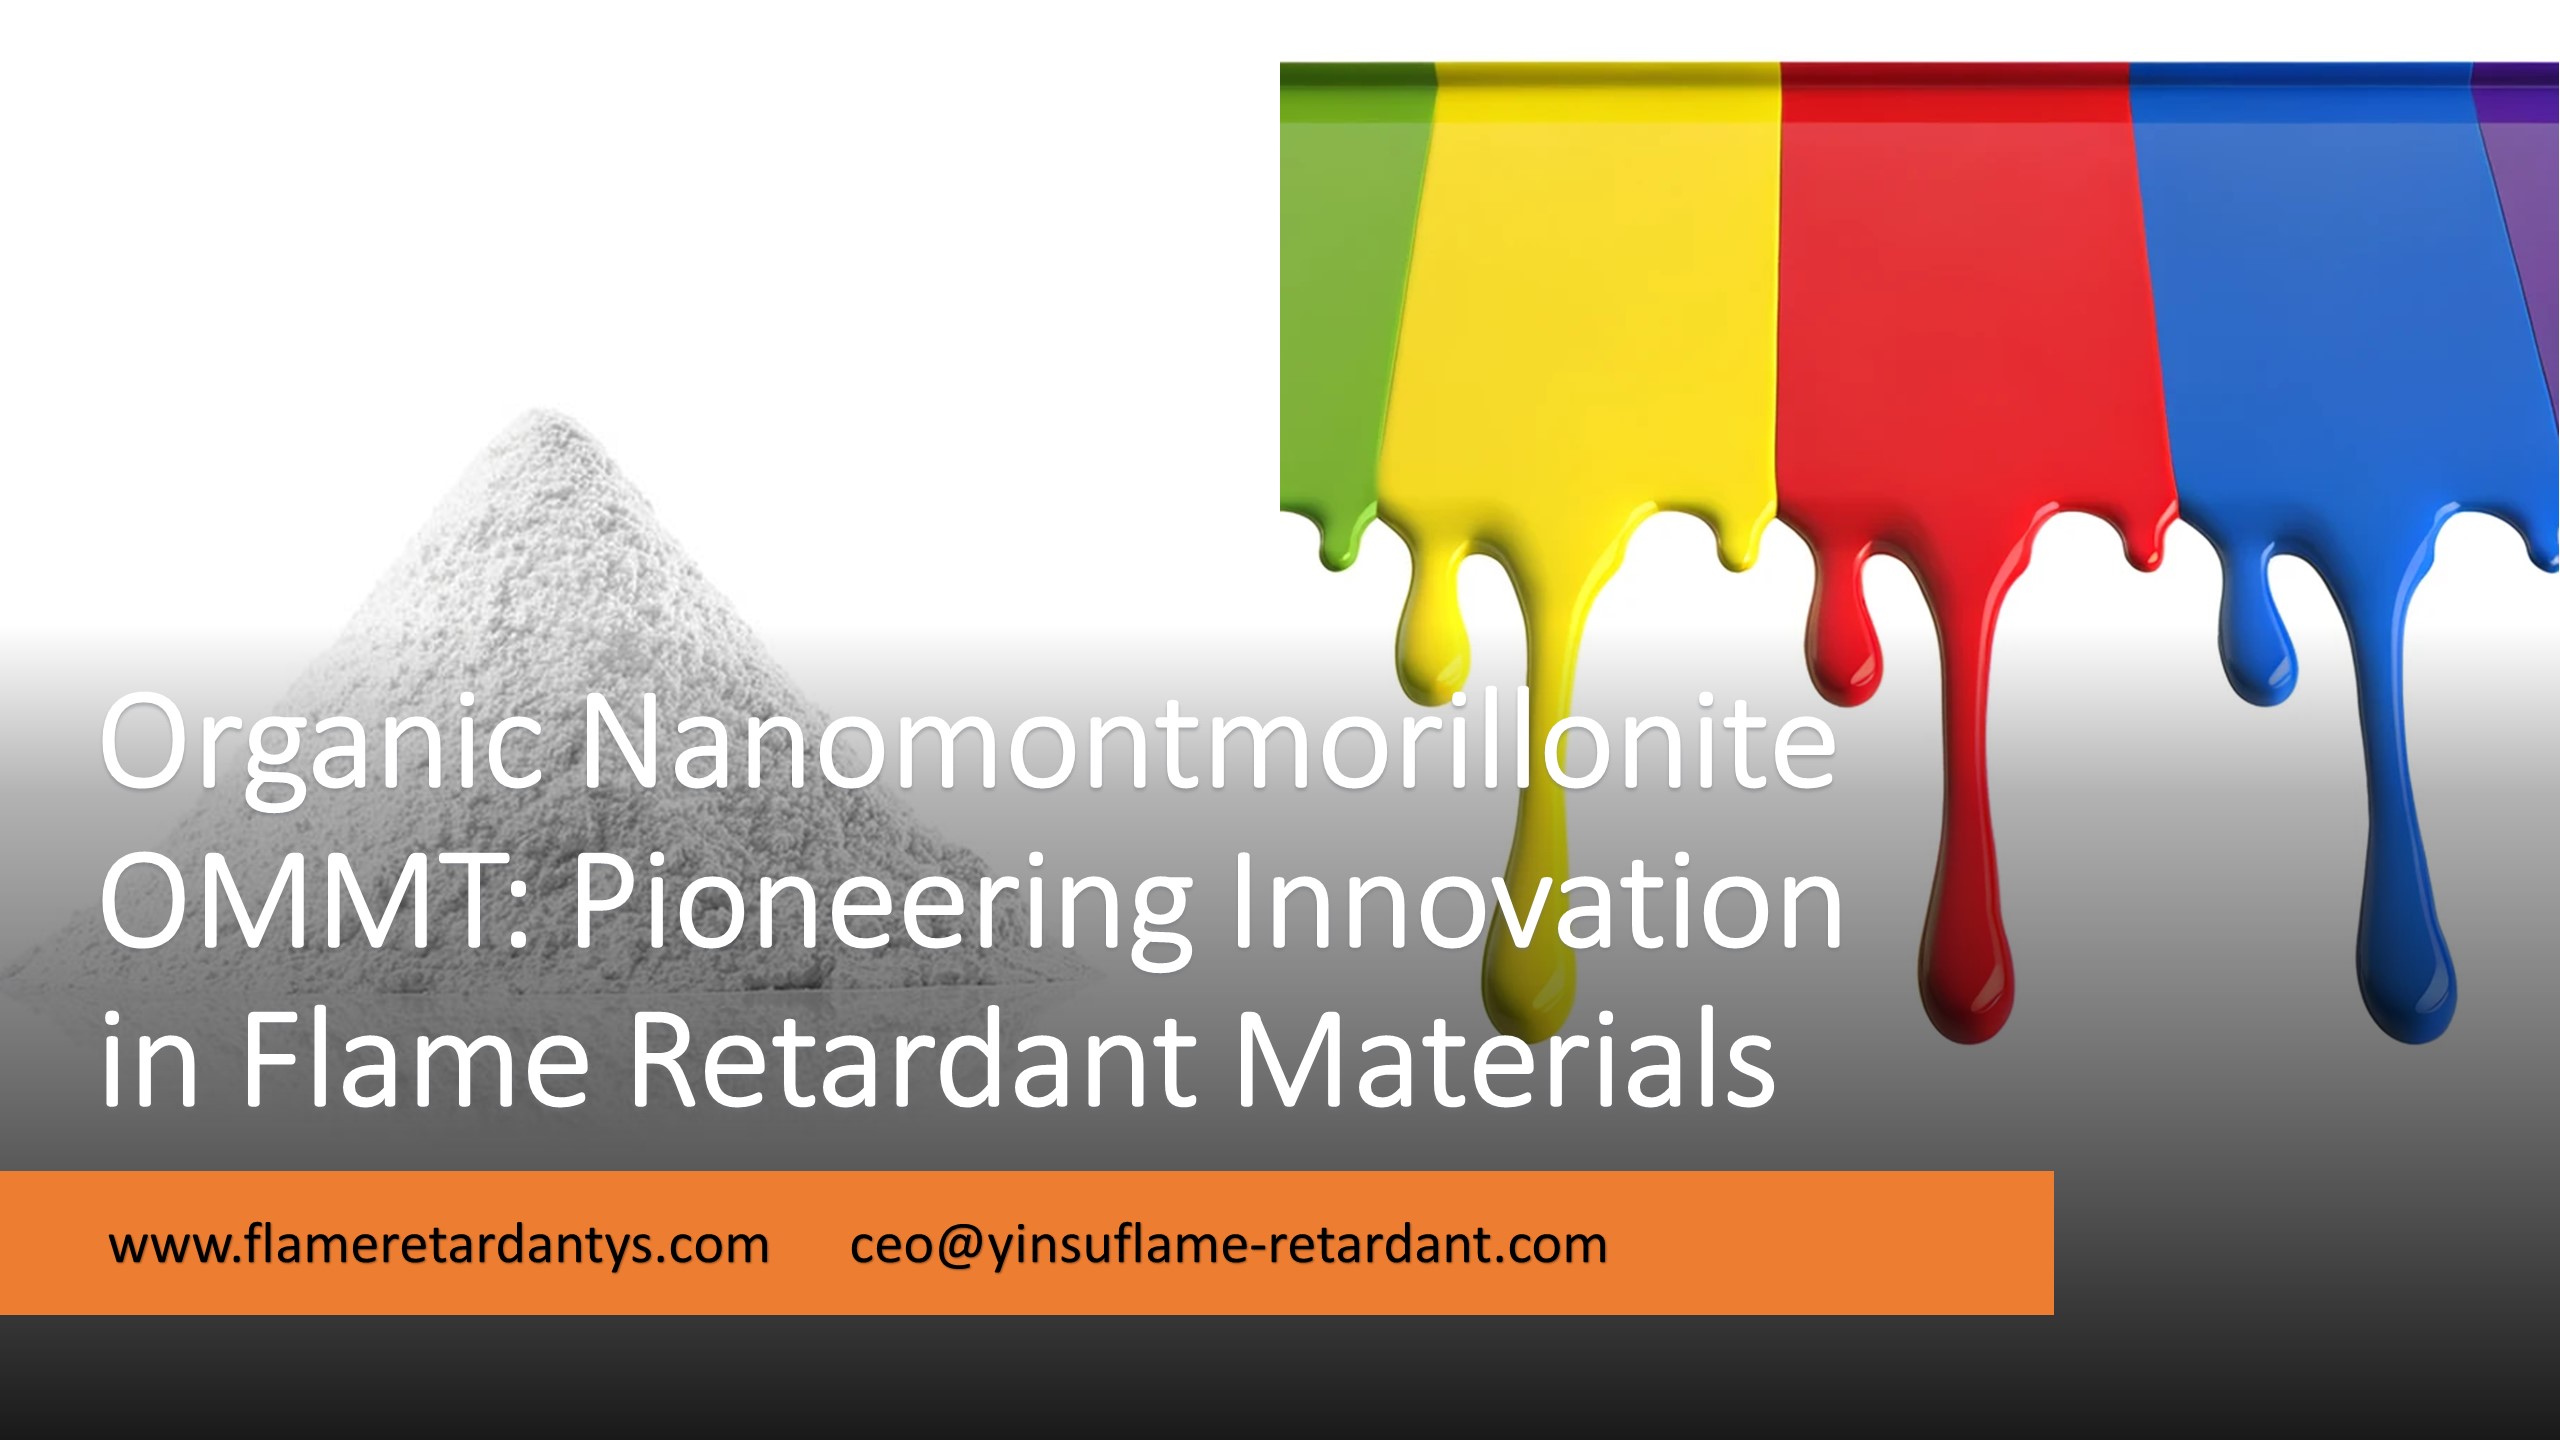 5.8 Органический наномонтмориллонит: новаторские инновации в области огнезащитных материалов1